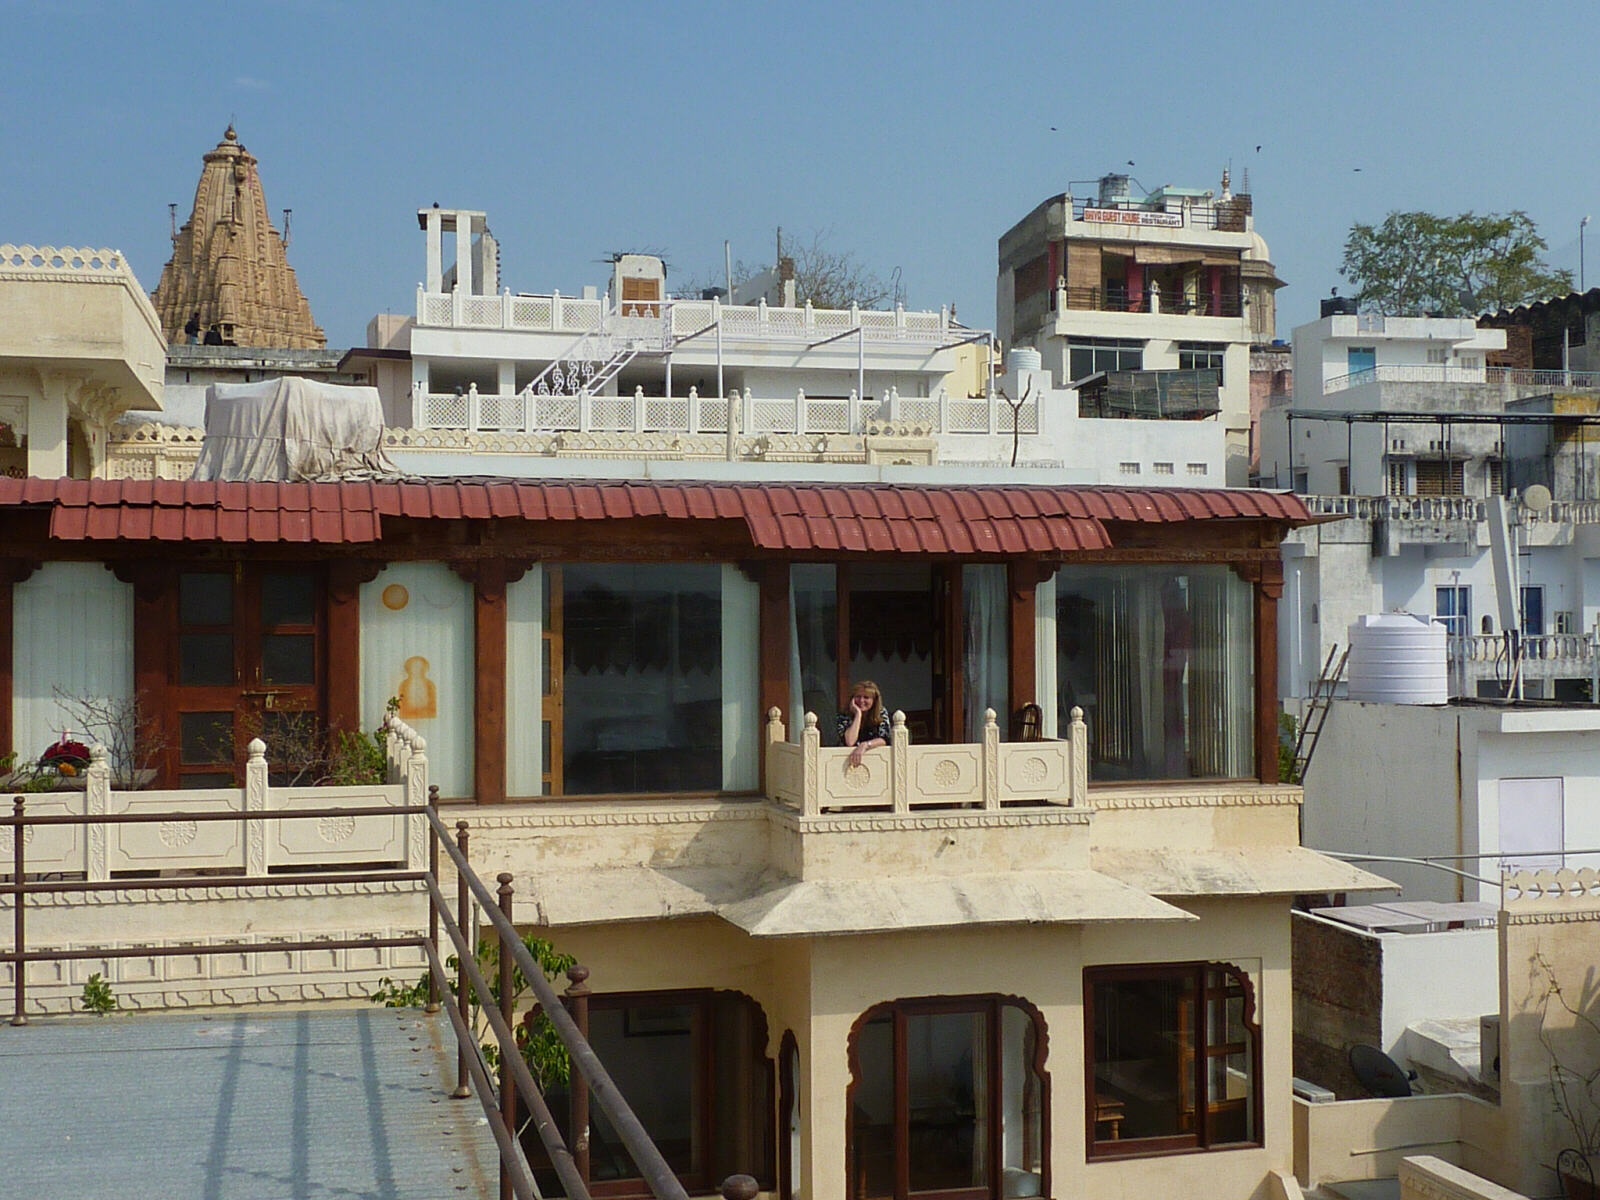 Room 219 in Kankarwa Haveli in Udaipur, Rajasthan